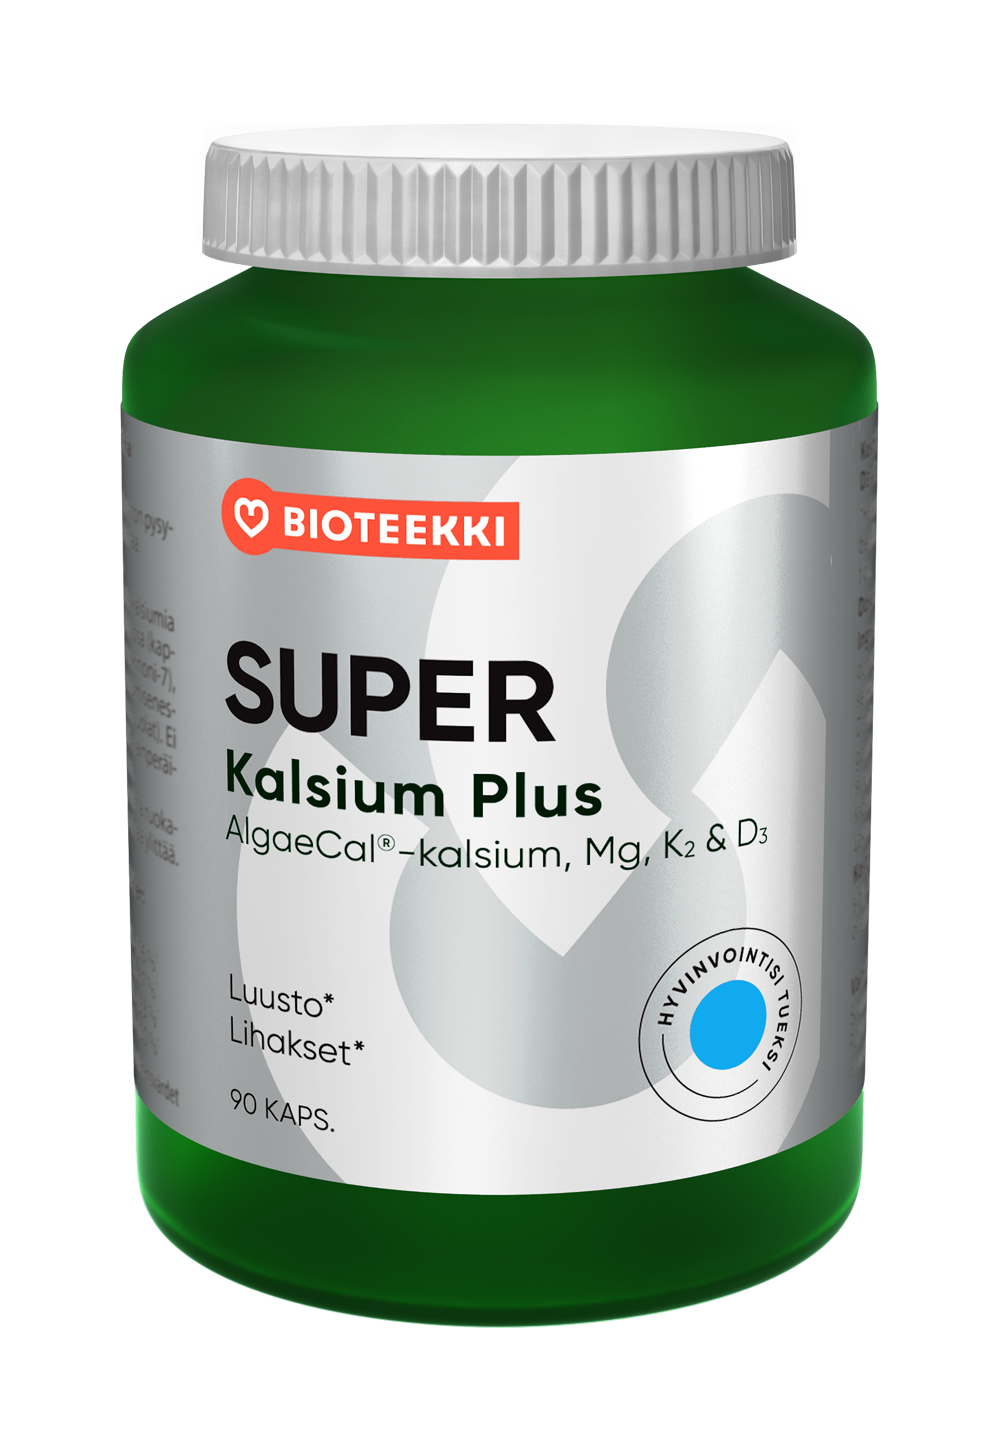 Super Kalsium Plus